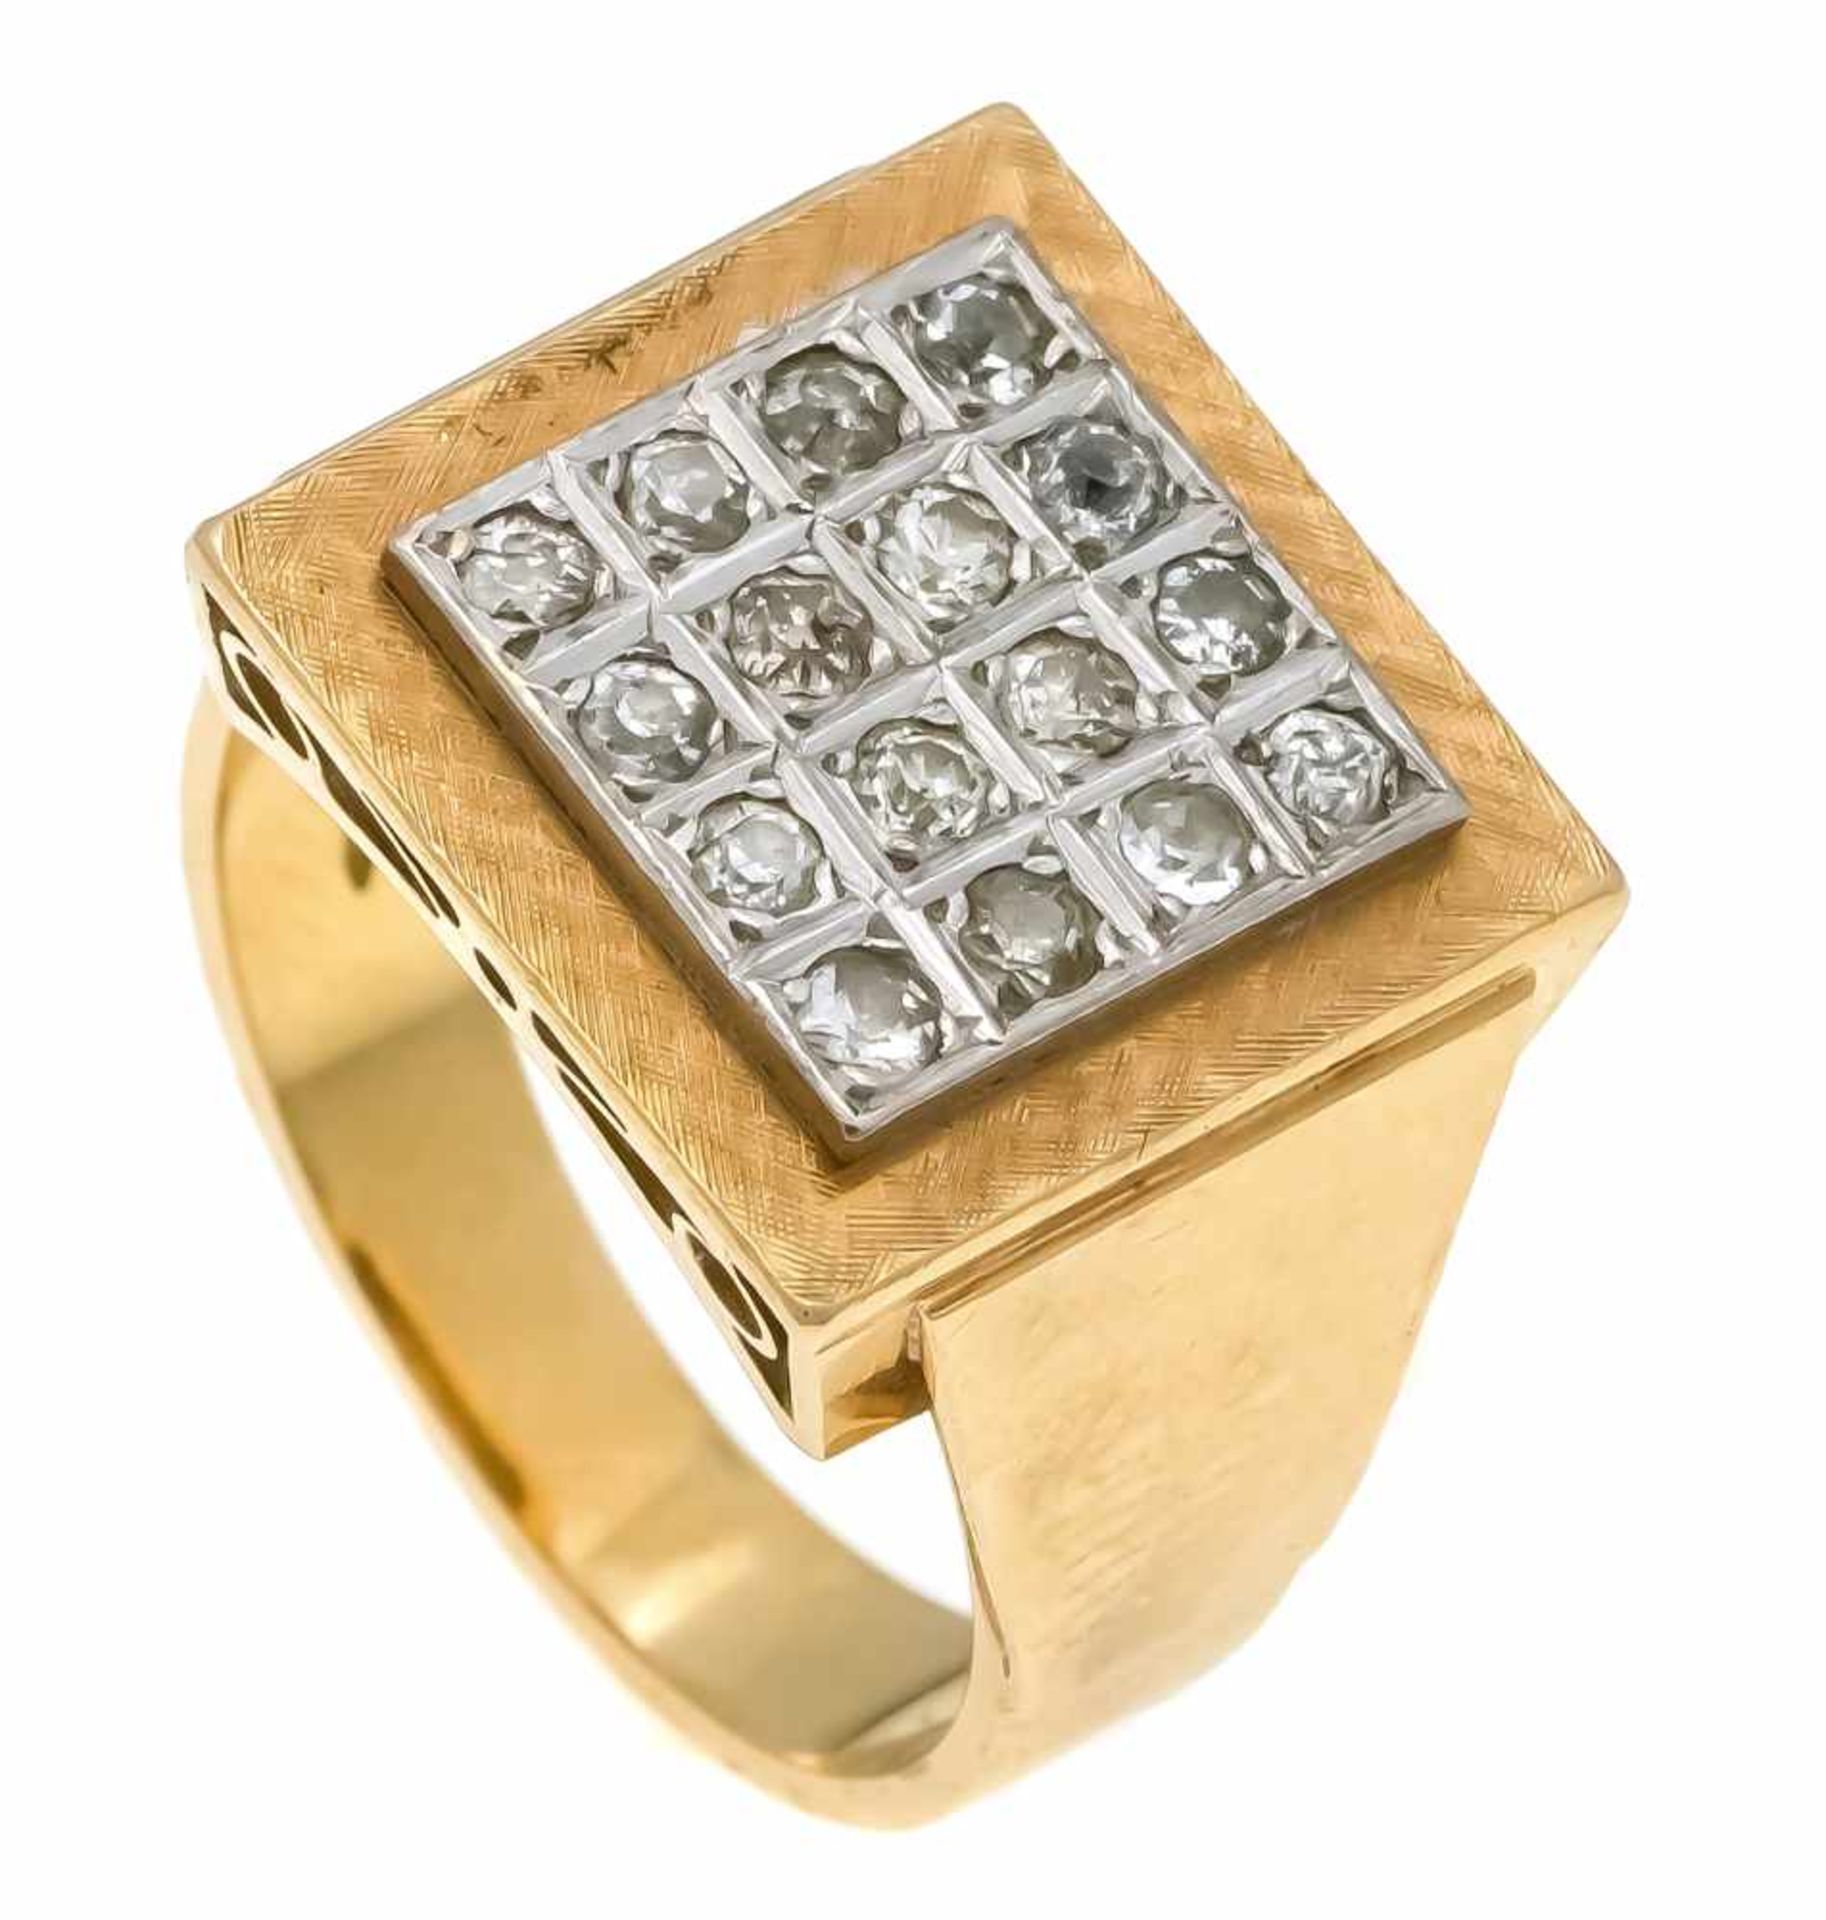 Altschliff-Diamant-Ring GG/WG 750/000 mit 16 Altschliff-Diamanten, zus. 0,40 ct l.get.W/SI-PI, RG